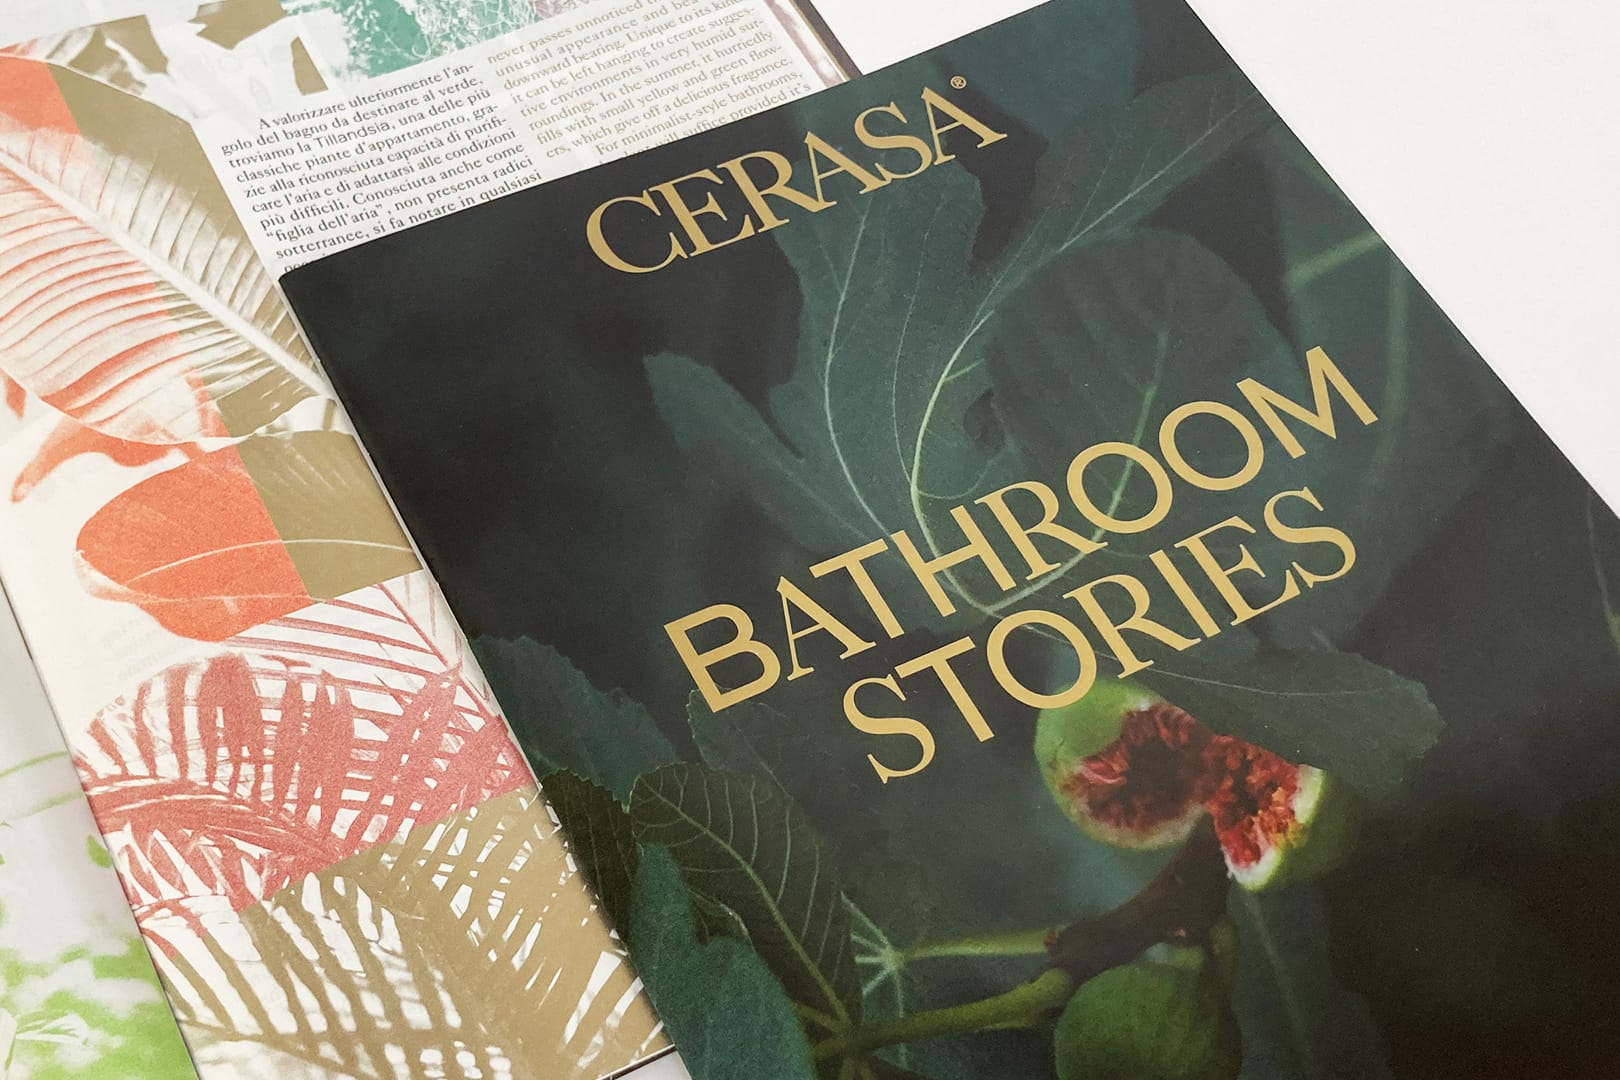 Cerasa arredo bagno Bathroom Stories